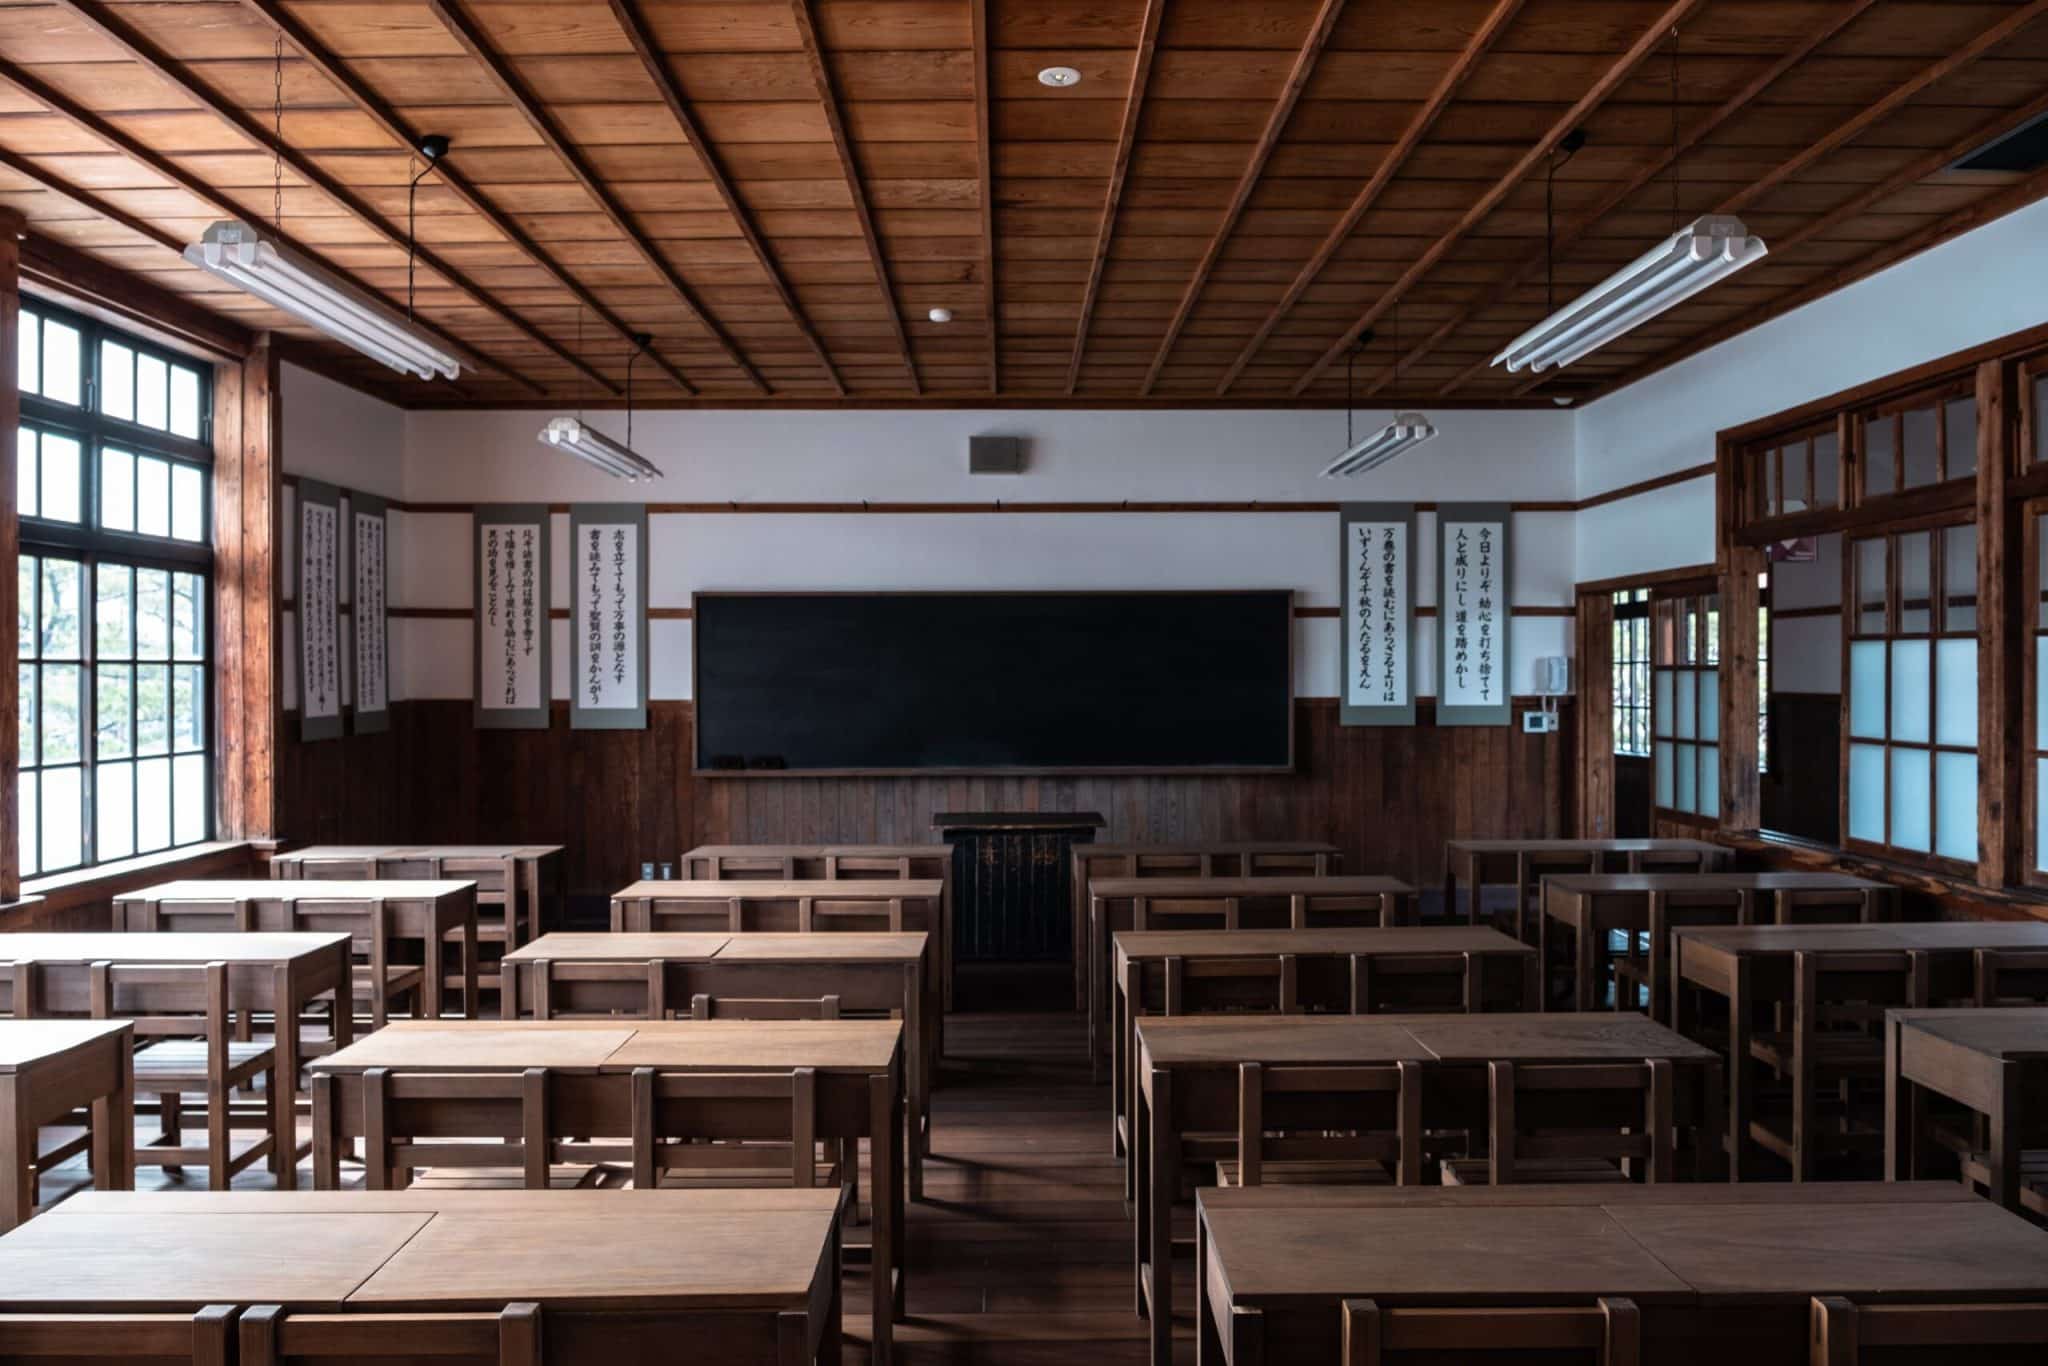 Traditional Japanese classroom photo by Hiroyoshi Urushima for Unsplash